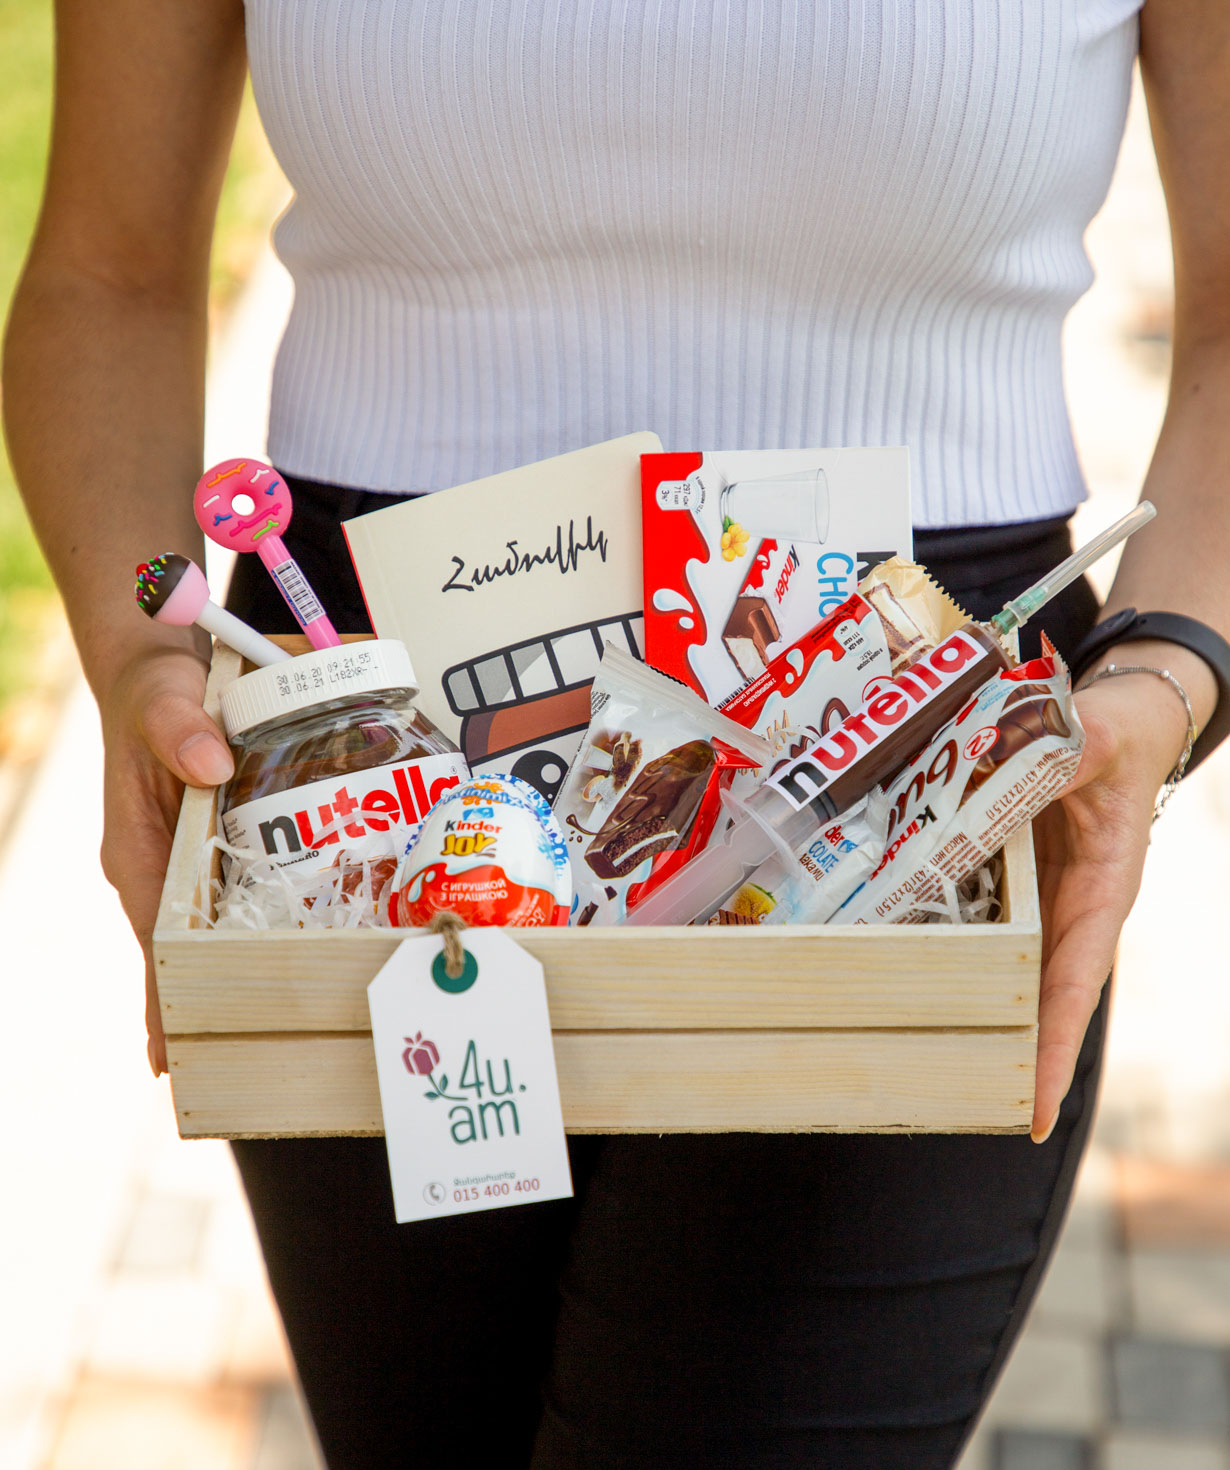 Gift box `THE BOX` Nutella